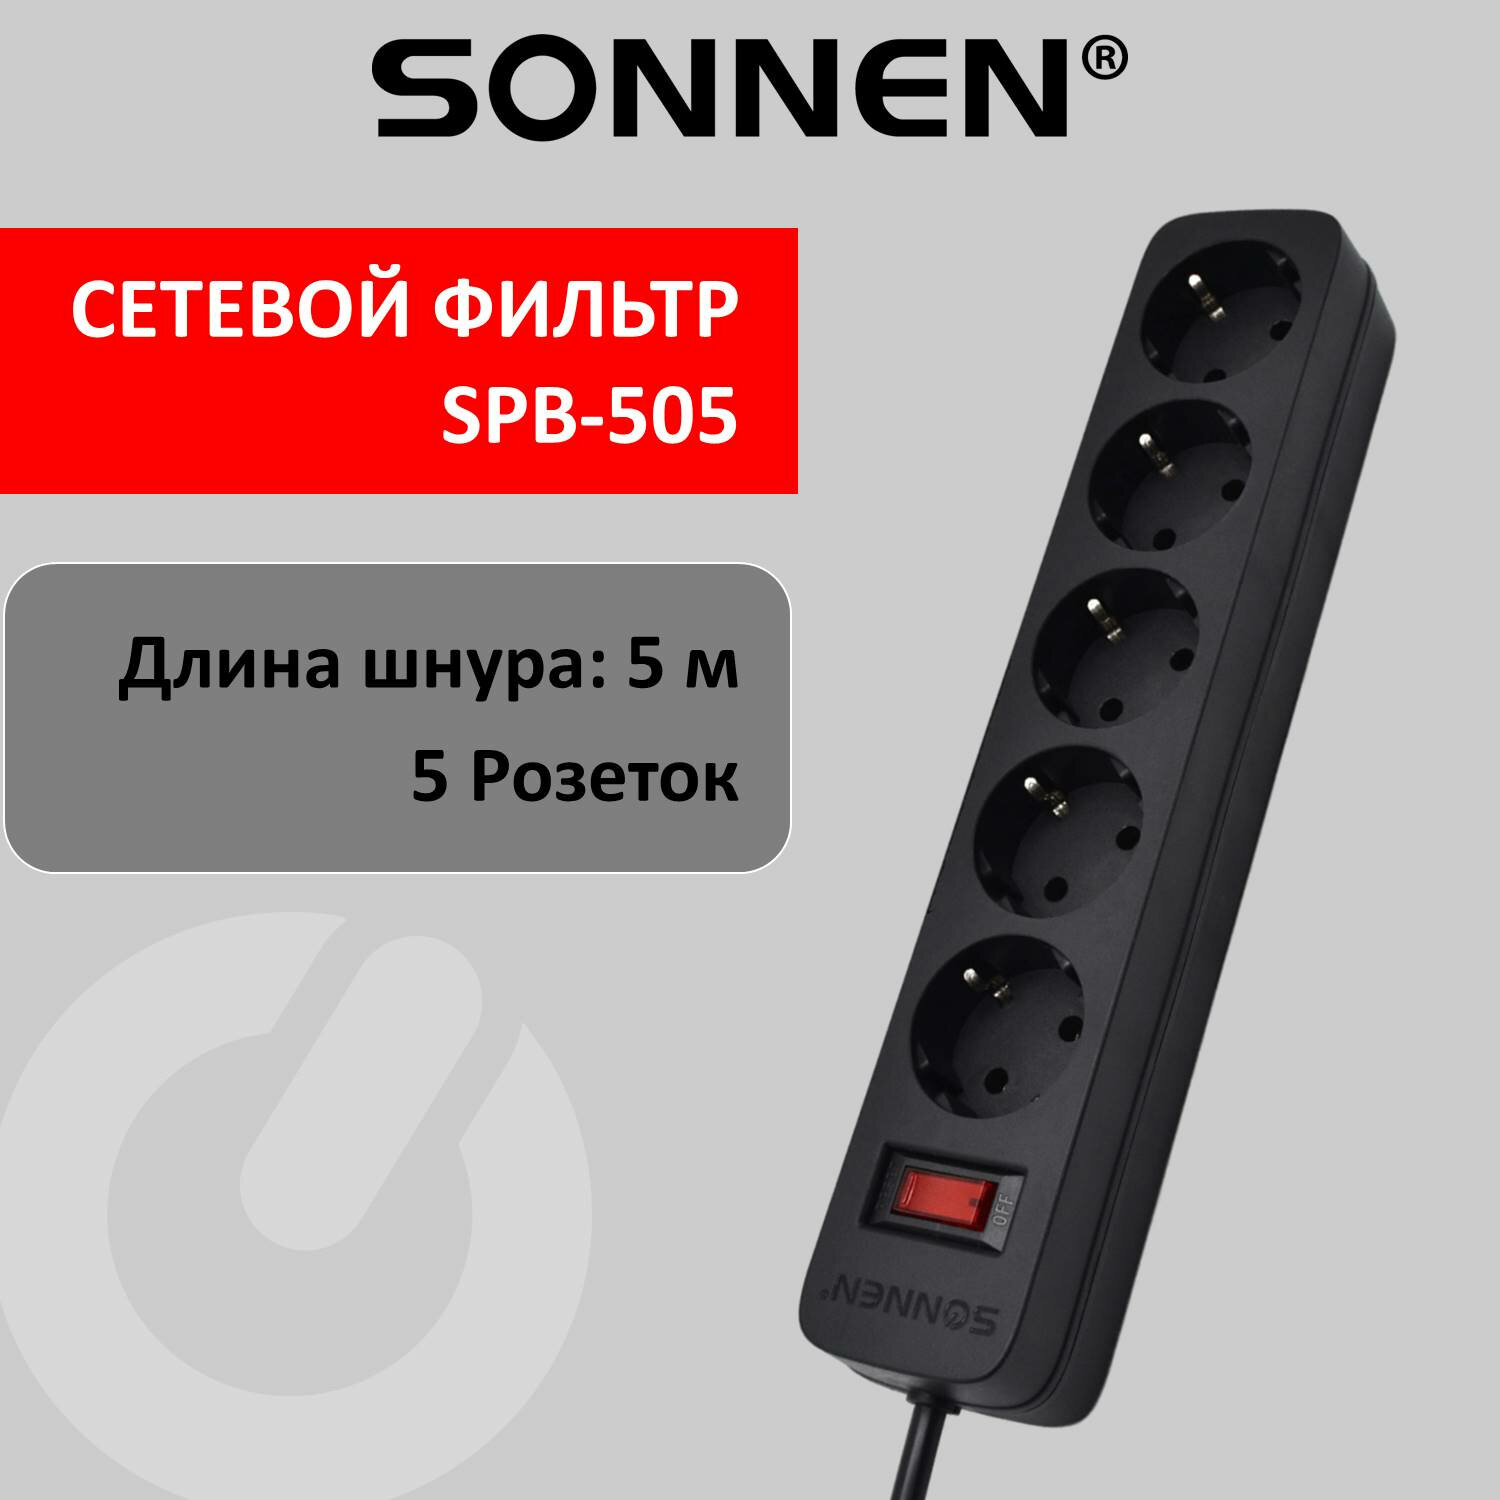 Сетевой фильтр SONNEN SPB-505, 5-розеток, 5 м, черный (513658)